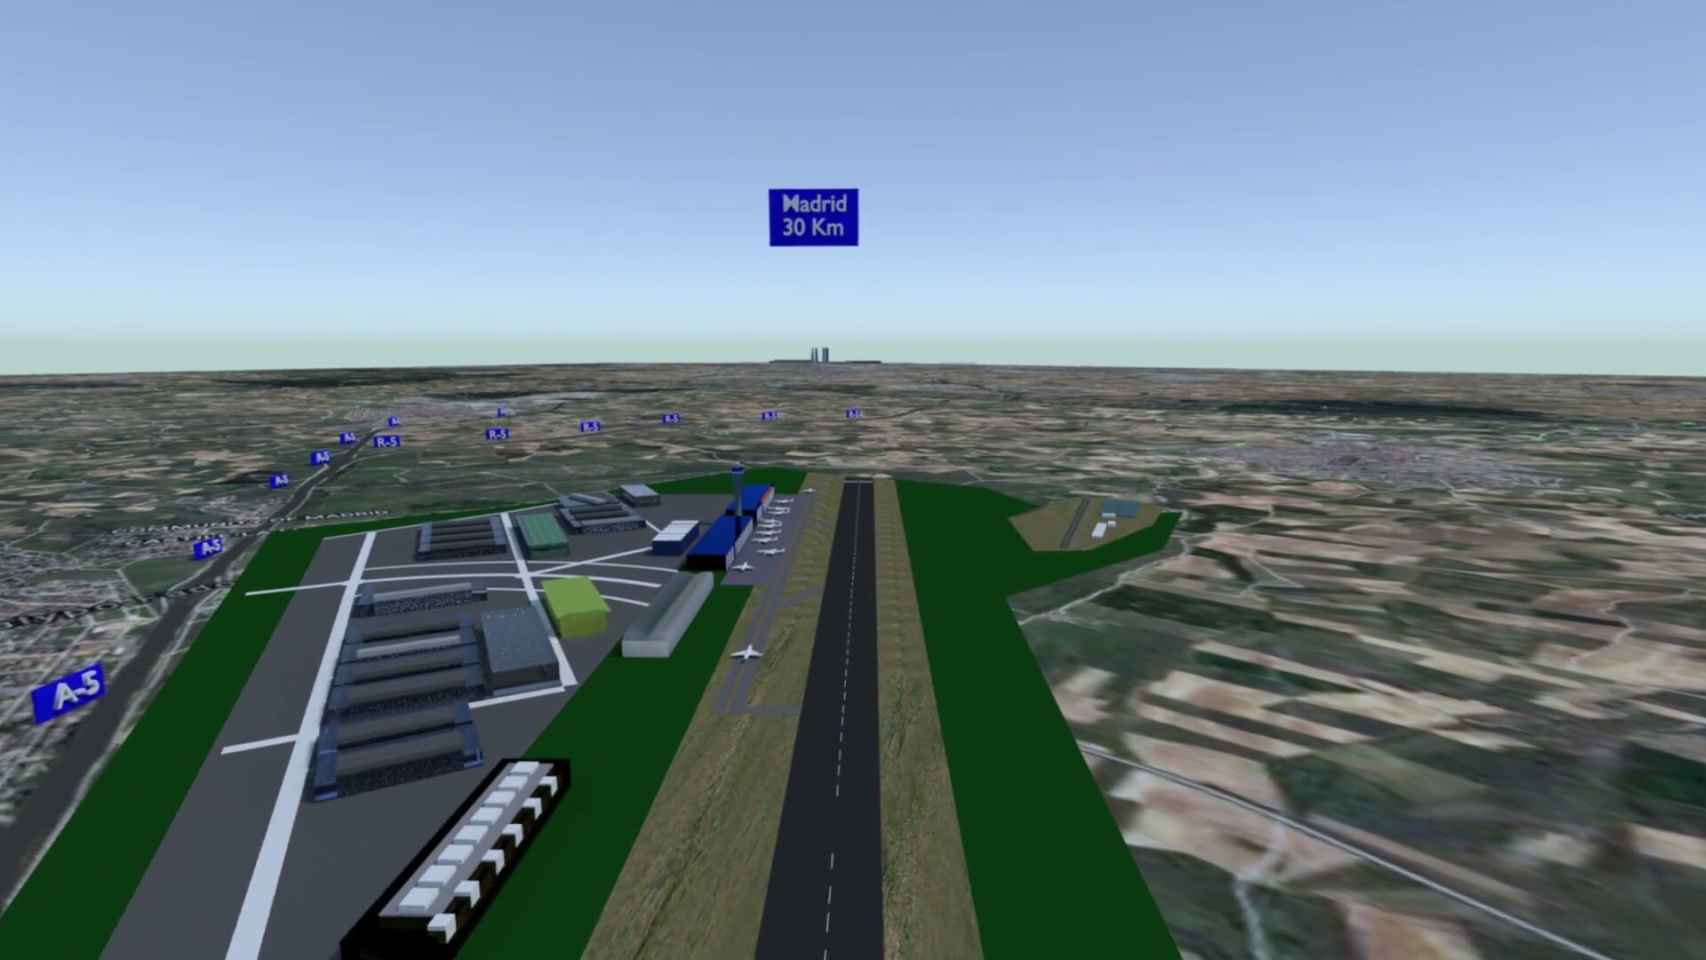 Perspectiva del aeropuerto proyectado en el límite provincial entre Madrid y Toledo.